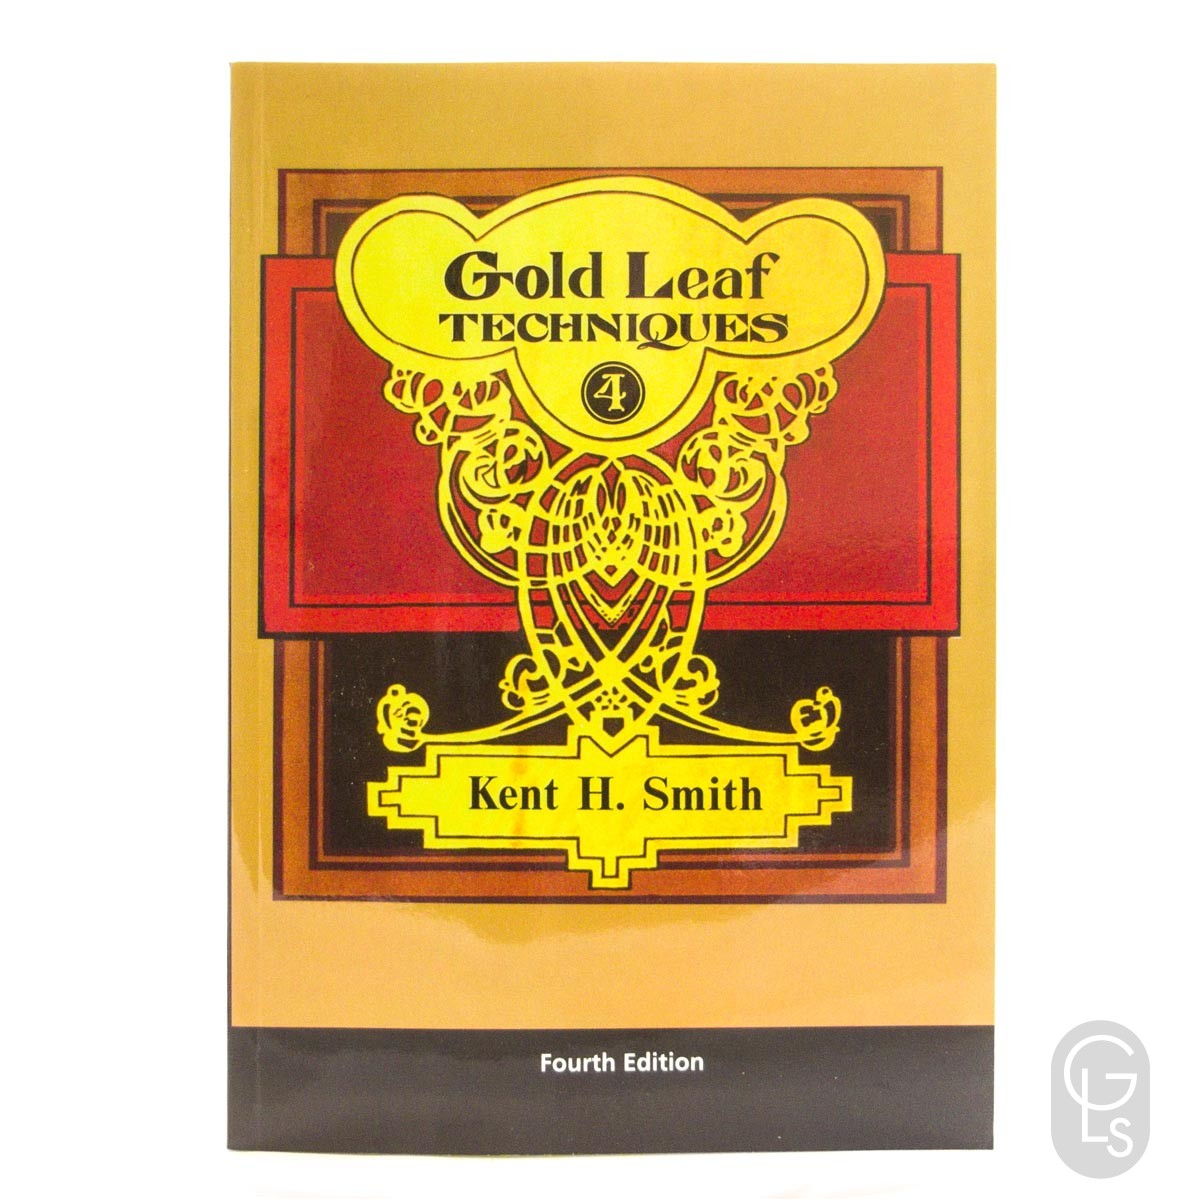 Gold Leaf Techniques